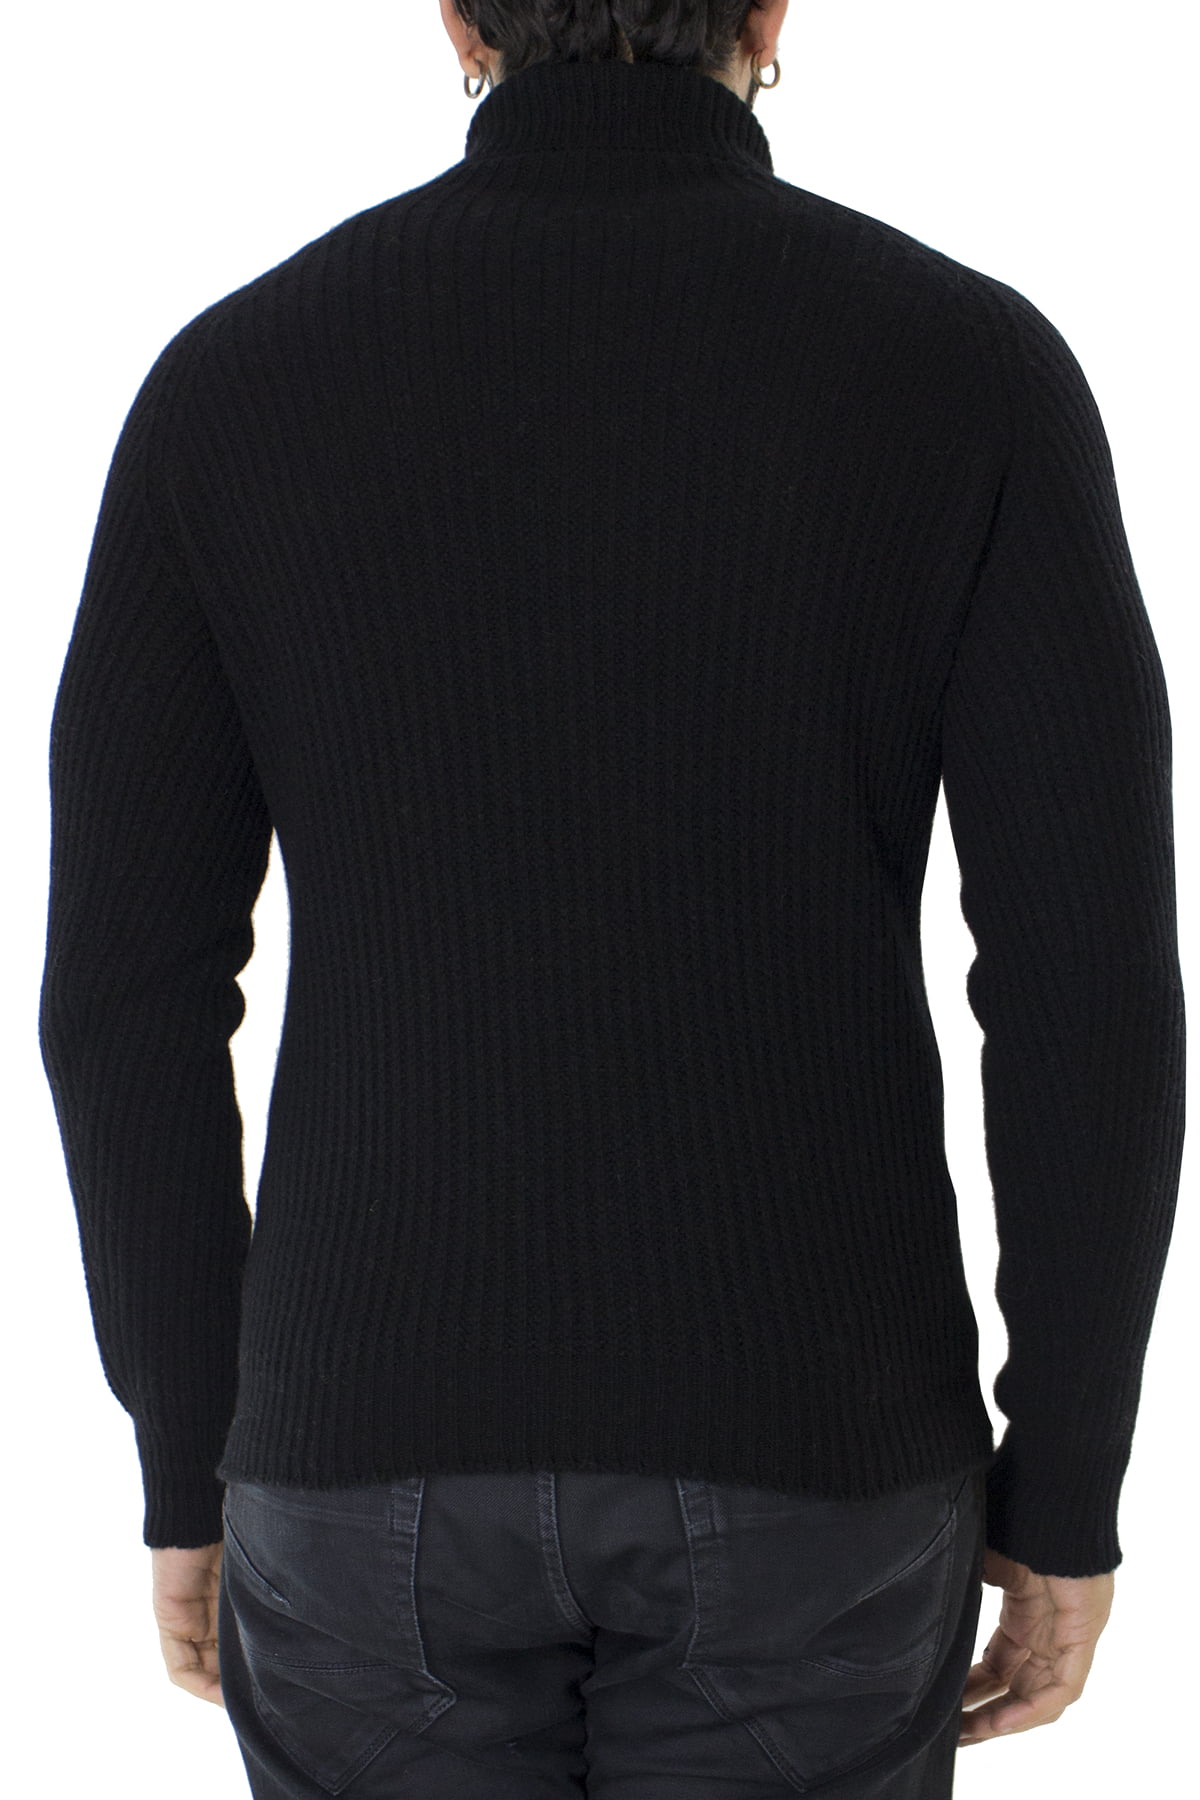 Maglione uomo collo alto nero in lana merinos a costa inglese slim fit made in italy